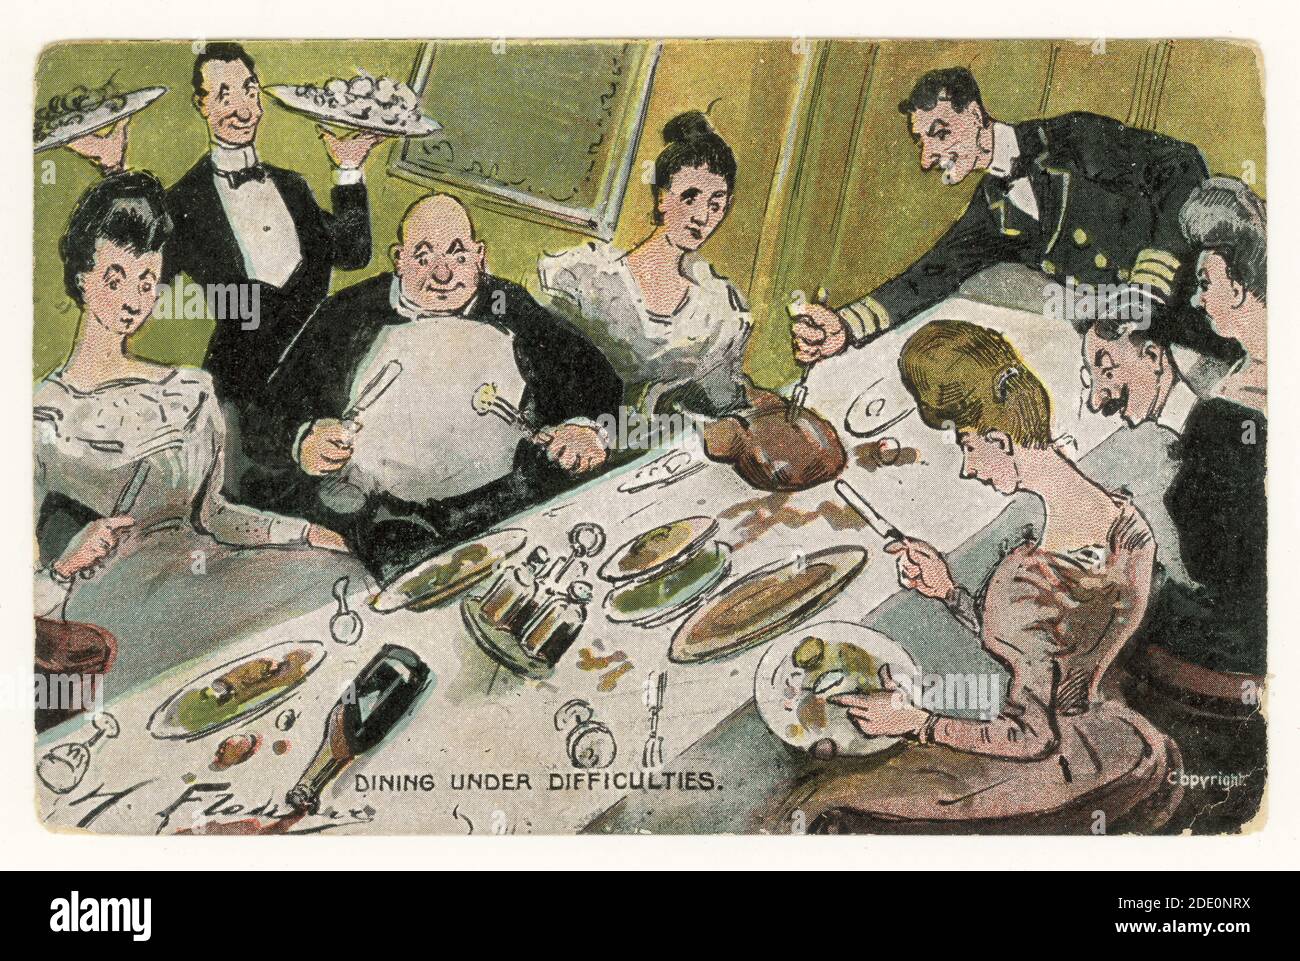 Carte postale originale de la bande dessinée Edwardienne par l'artiste Hermann Fleury, dîner en difficulté - manger à partir d'une table en pente dans la salle à manger d'un navire, publié le 8 juillet 1906, Royaume-Uni Banque D'Images